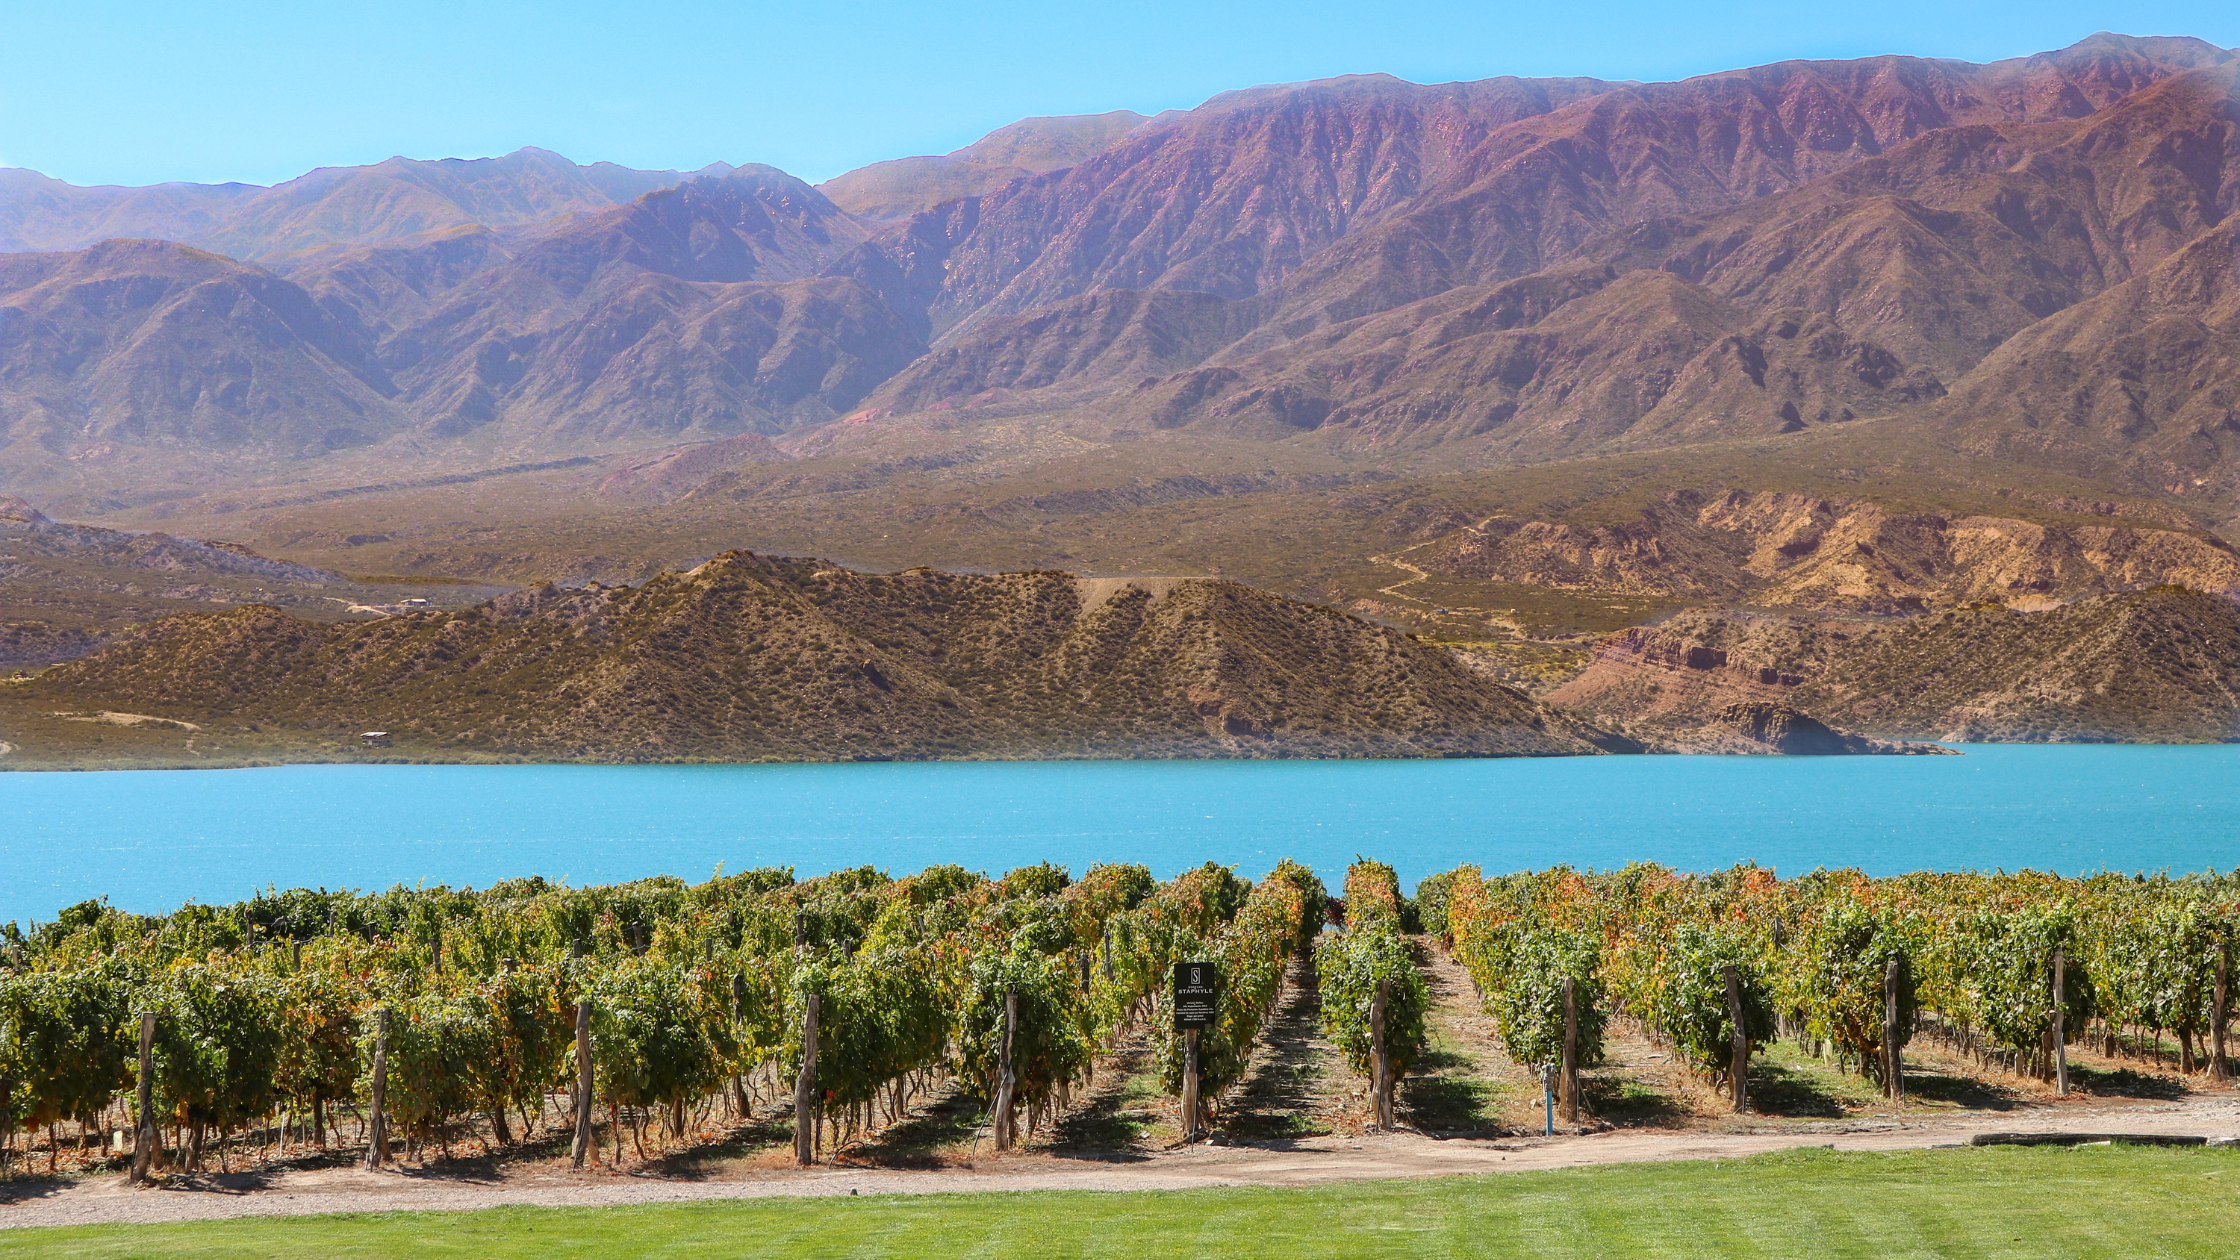 Vista de um vinhedo em uma vinícola em Mendoza, Argentina com a Cordilheira dos Andes ao fundo